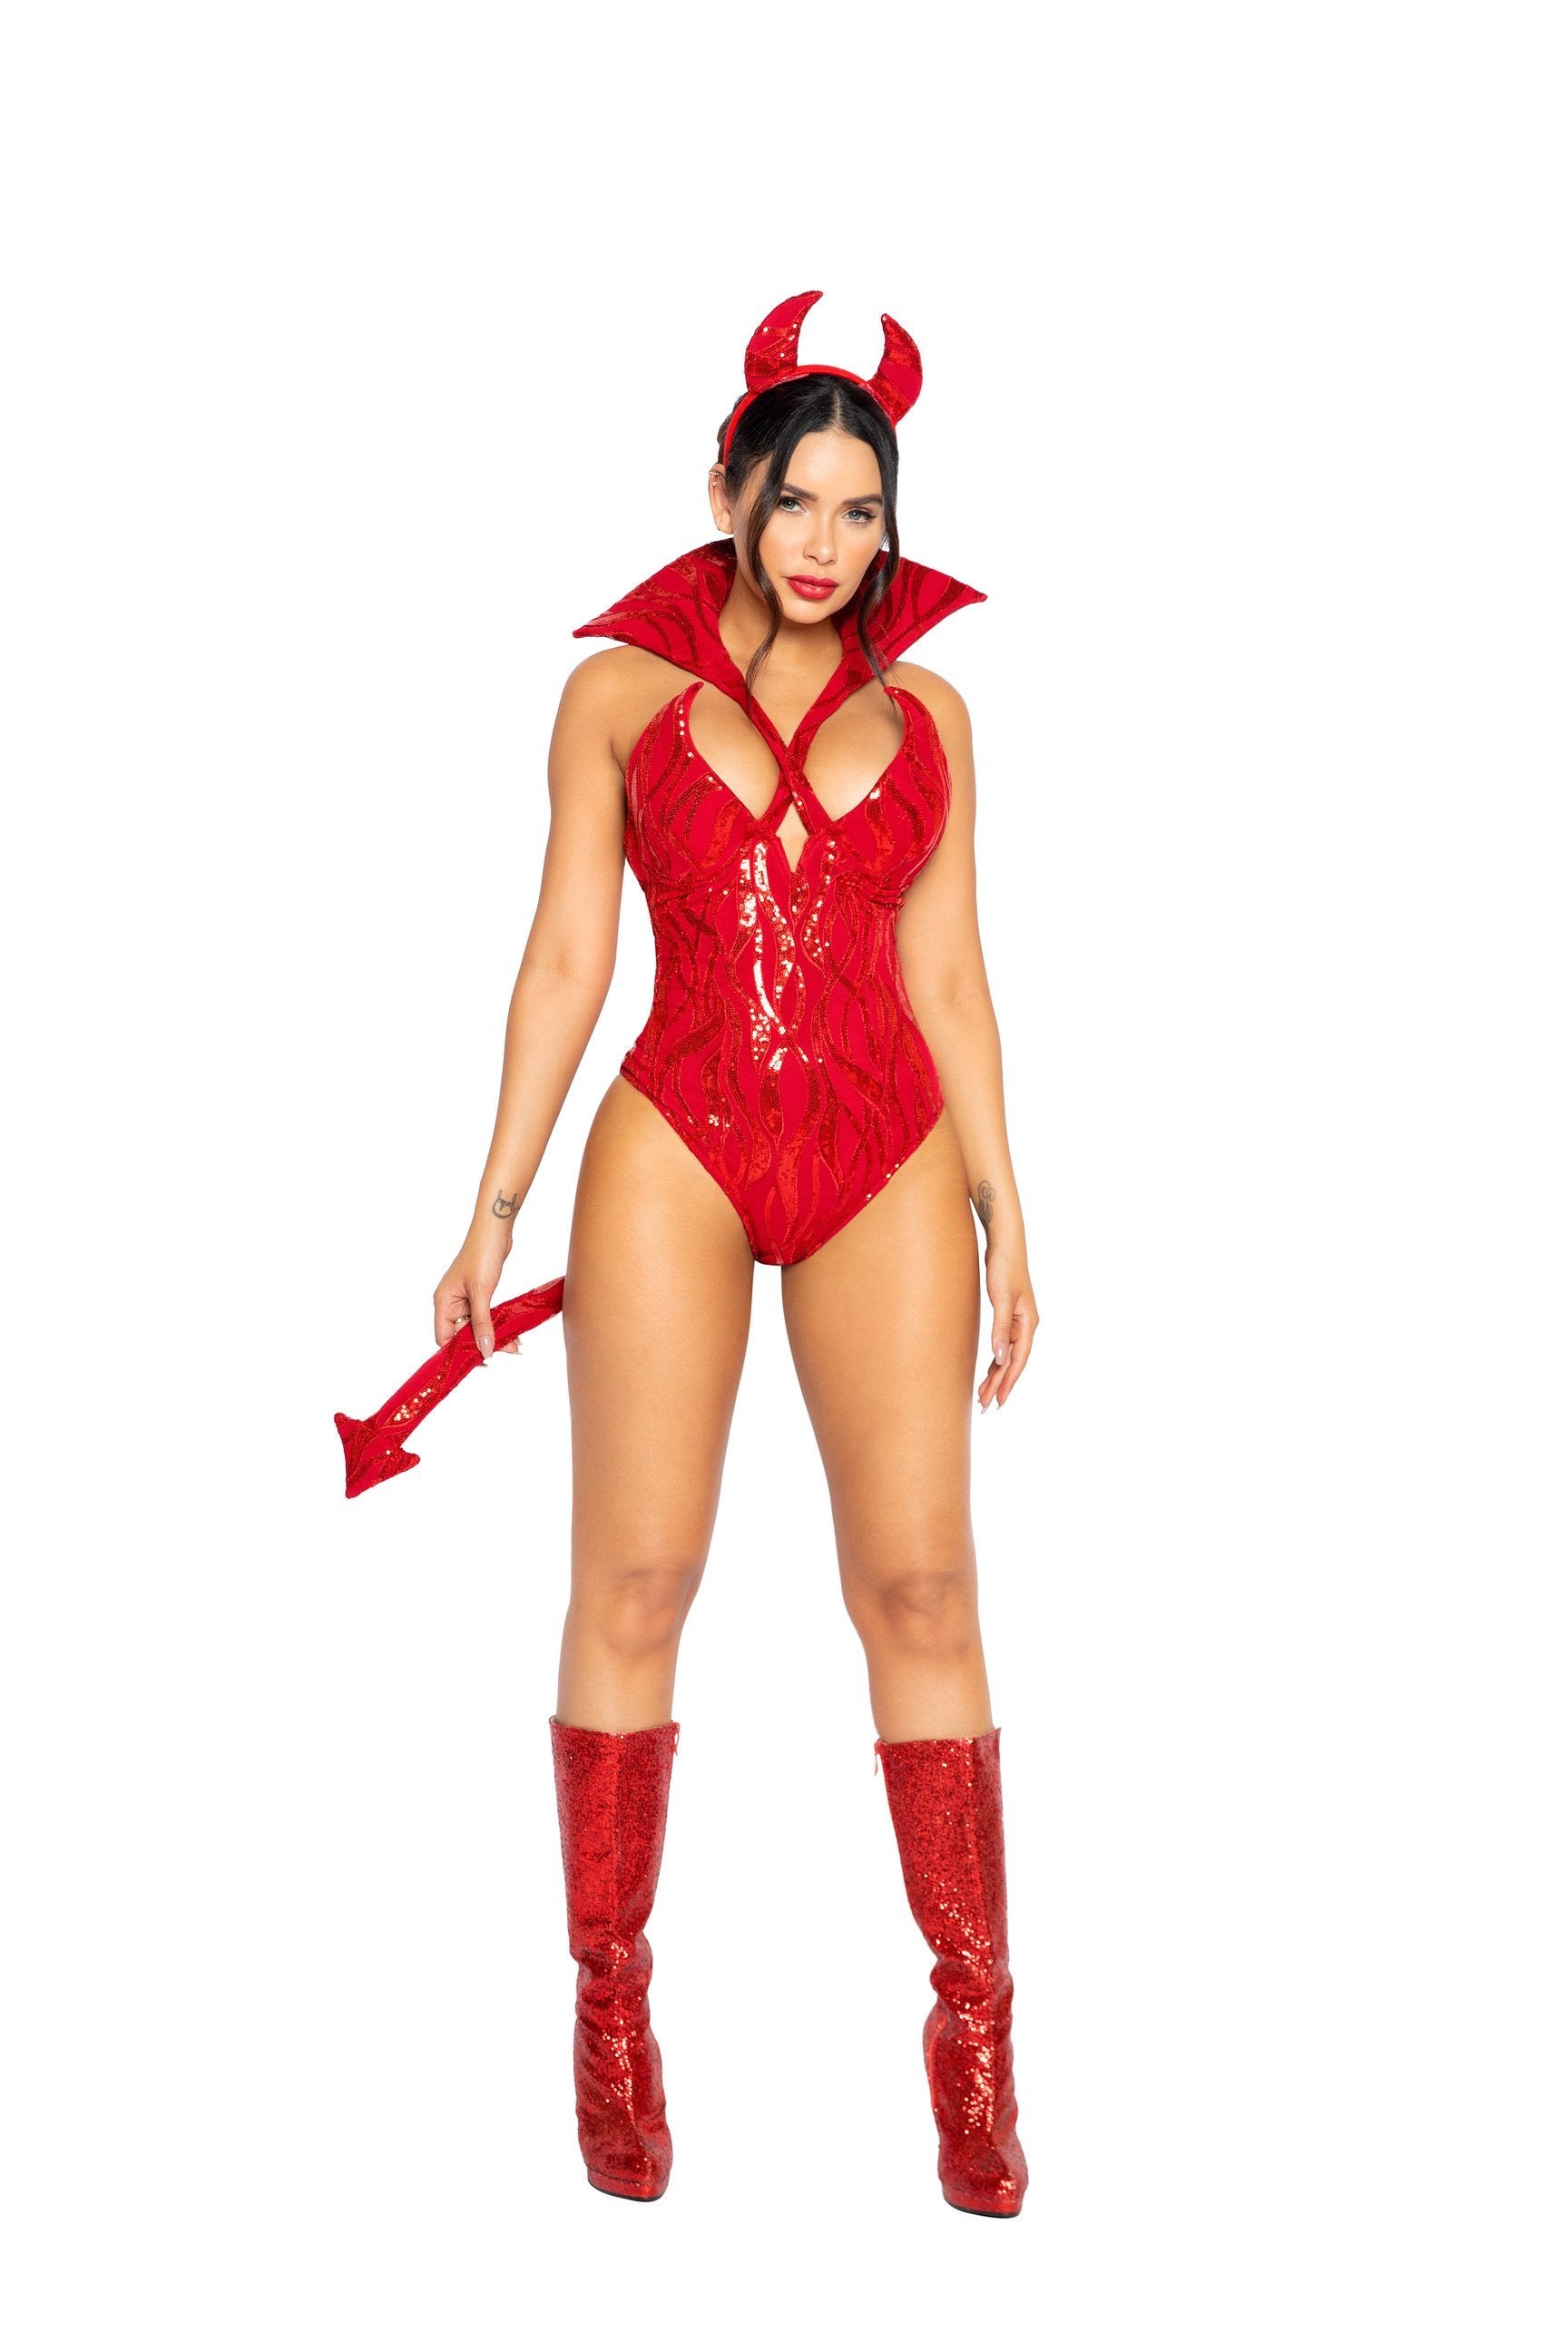 Roma Costume Costumes Small / Red 4963 - 2pc Underworld Diva